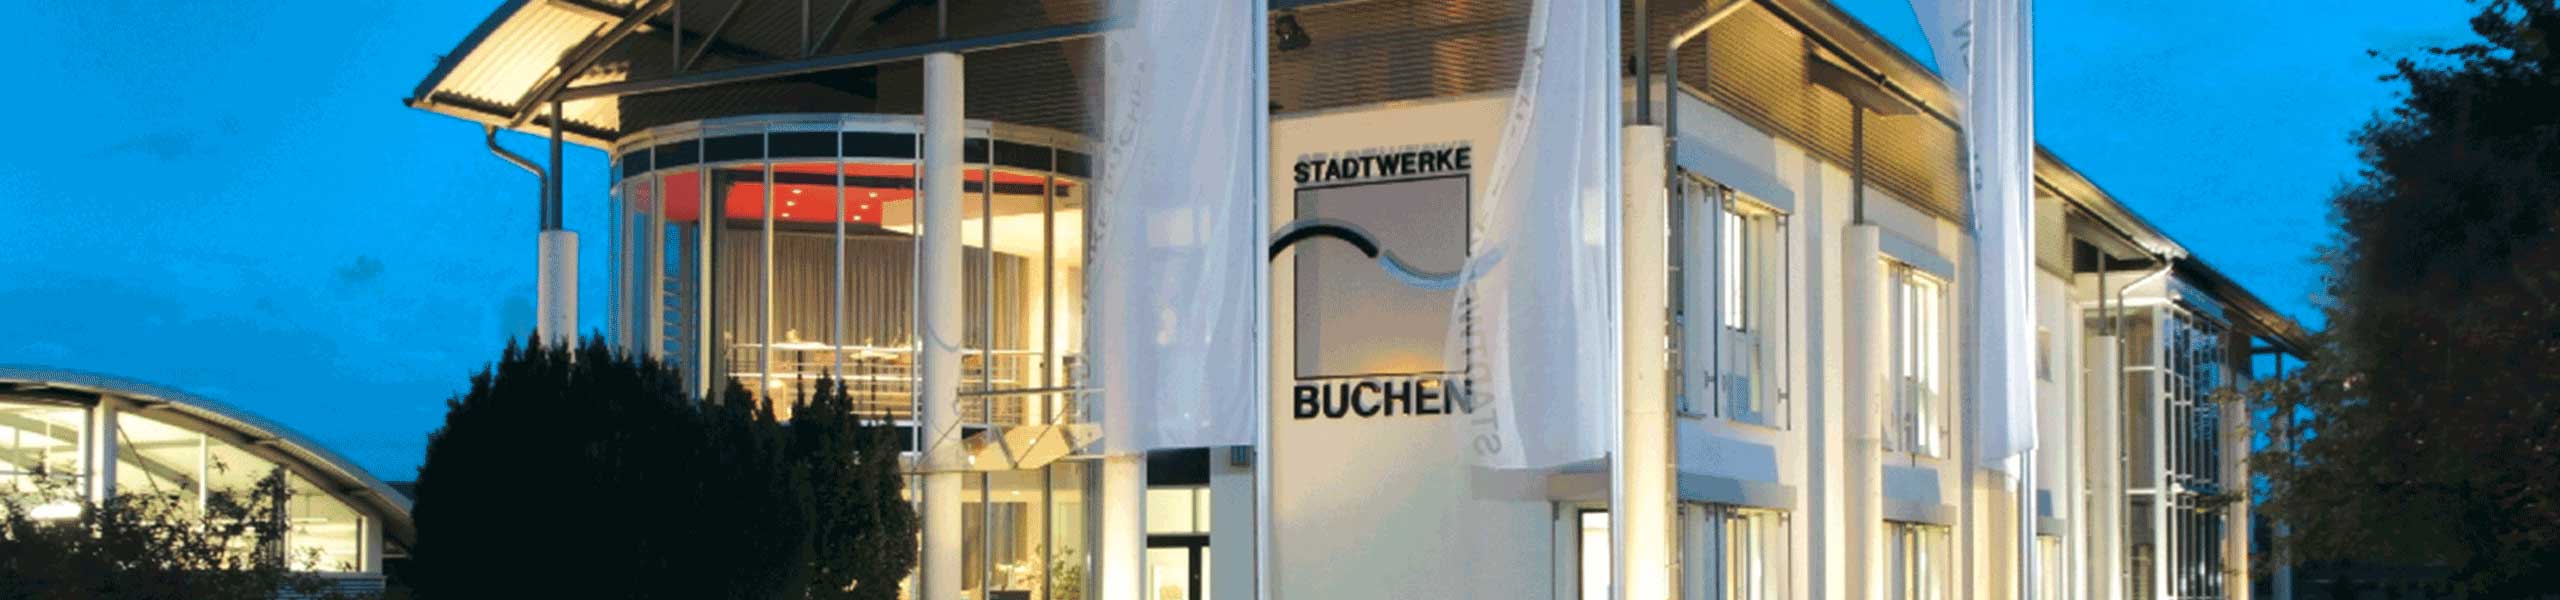 Stadtwerke Buchen GmbH & Co KG - Zählung und Messung